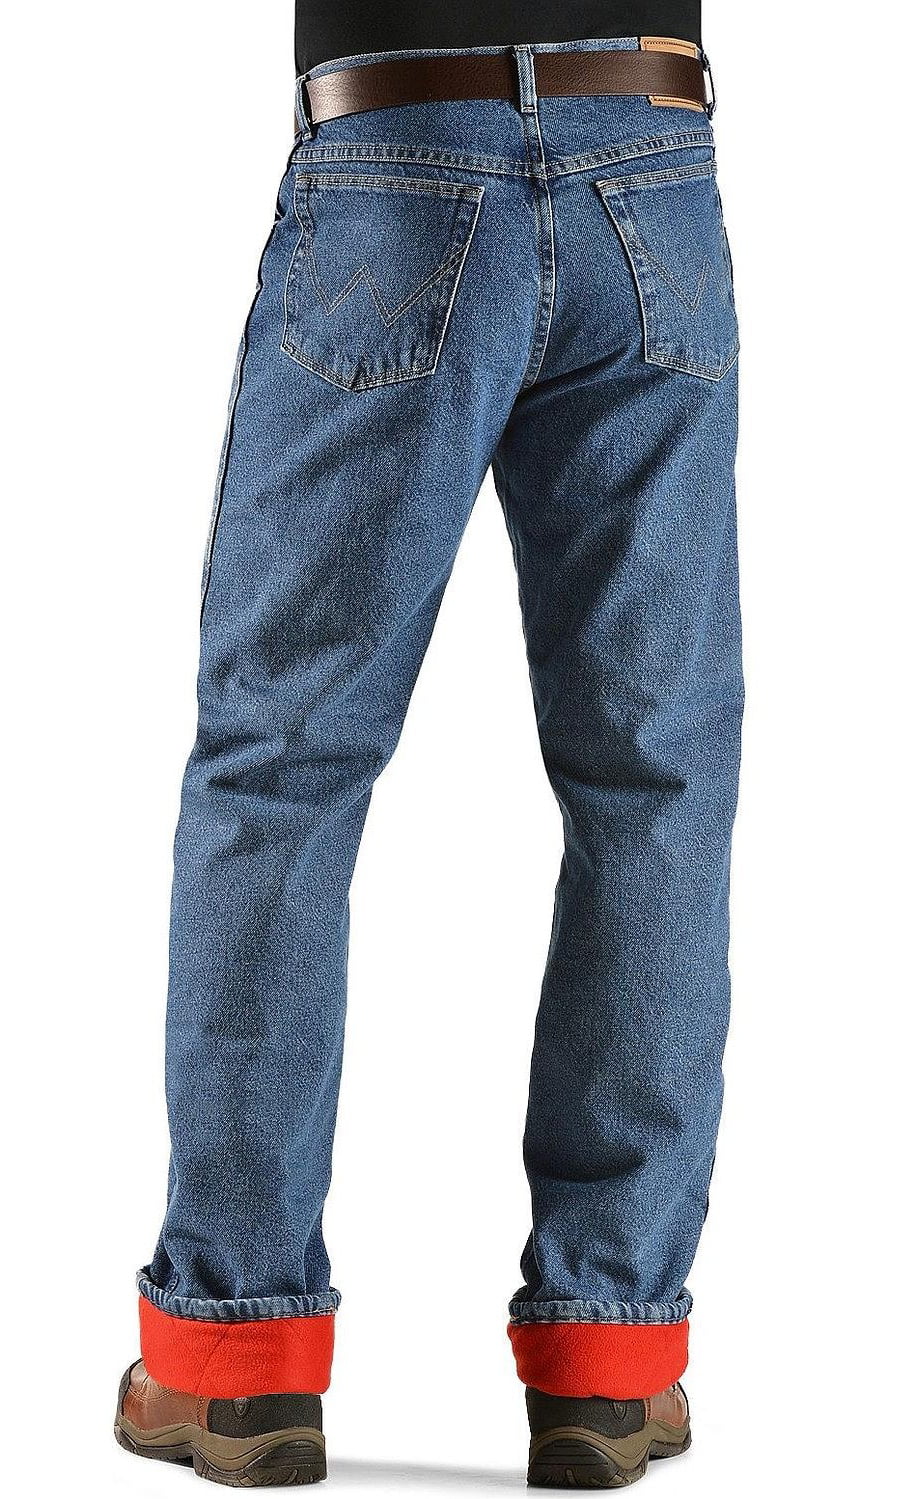 truworths jeans sale